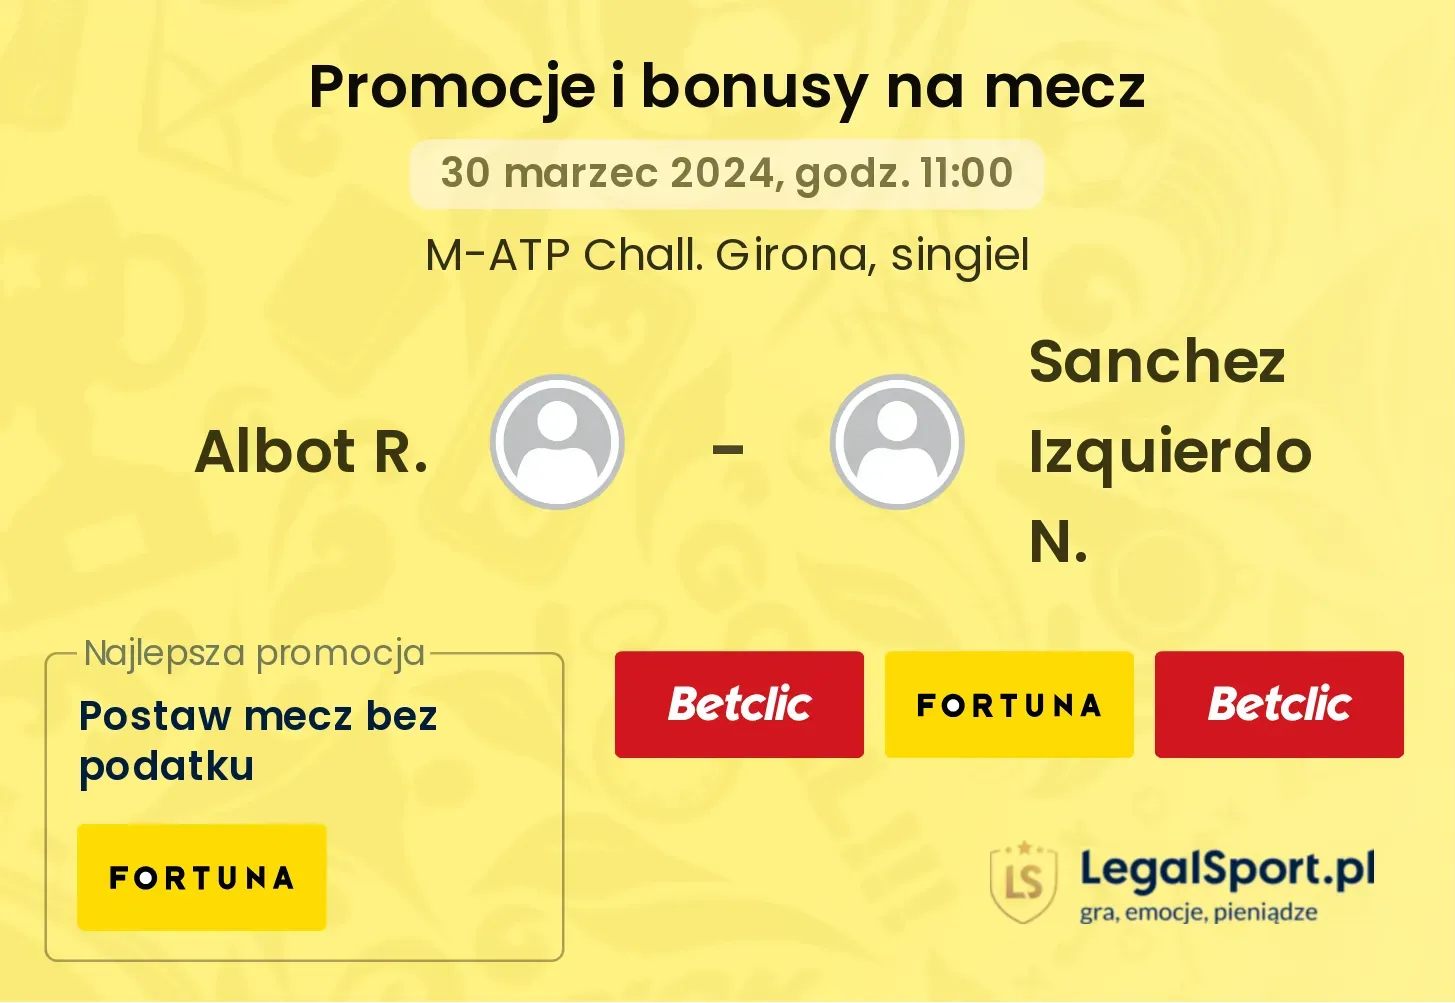 Albot R. - Sanchez Izquierdo N. promocje bonusy na mecz